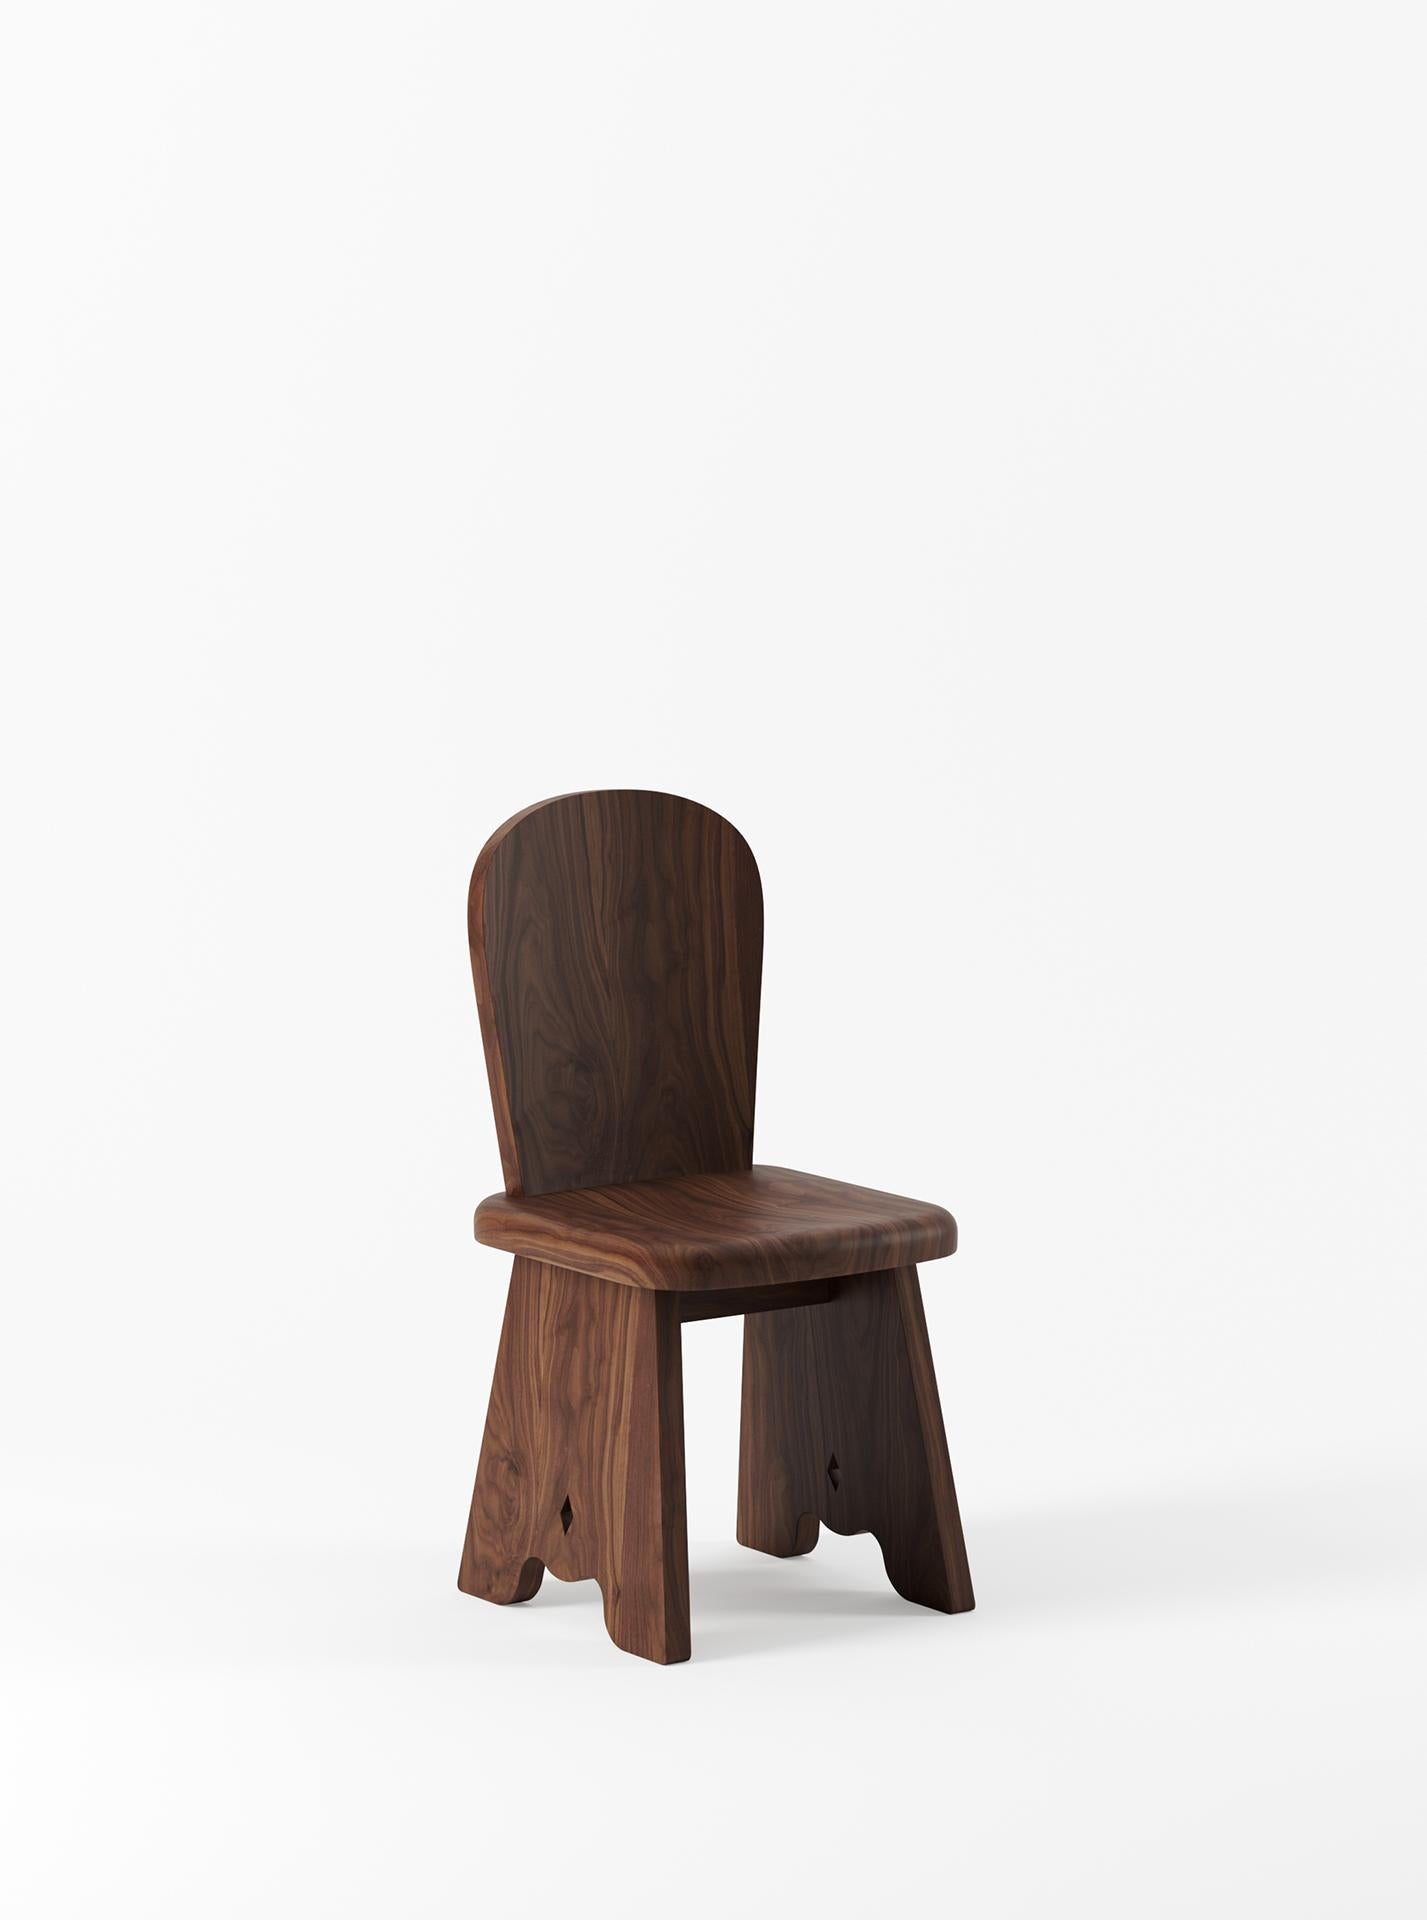 Der Rambling Chair von Yaniv Chen ist eine Anspielung auf die Silhouette des traditionellen Milchhockers, wie man ihn auf Farmen und viktorianischen Gehöften in Südafrika findet. Für Chen ist der Hocker gleichbedeutend mit Kindheitserinnerungen an